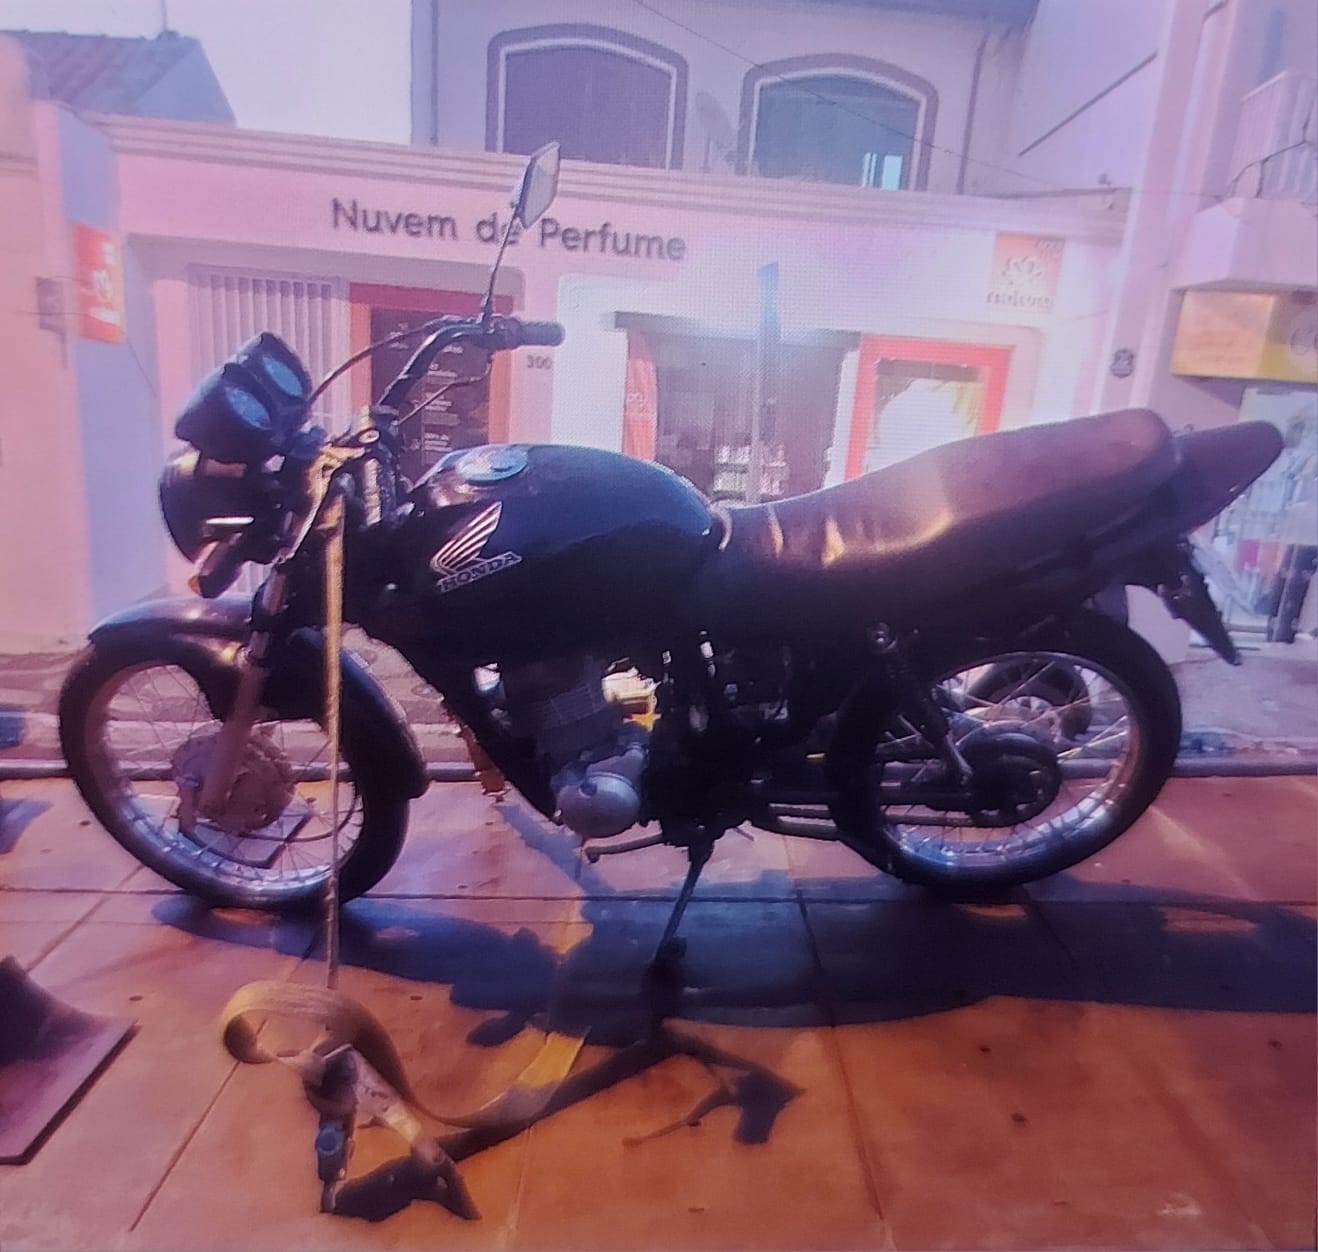 Guarda Civil de Capivari apreende moto com sinal de identificação adulterado